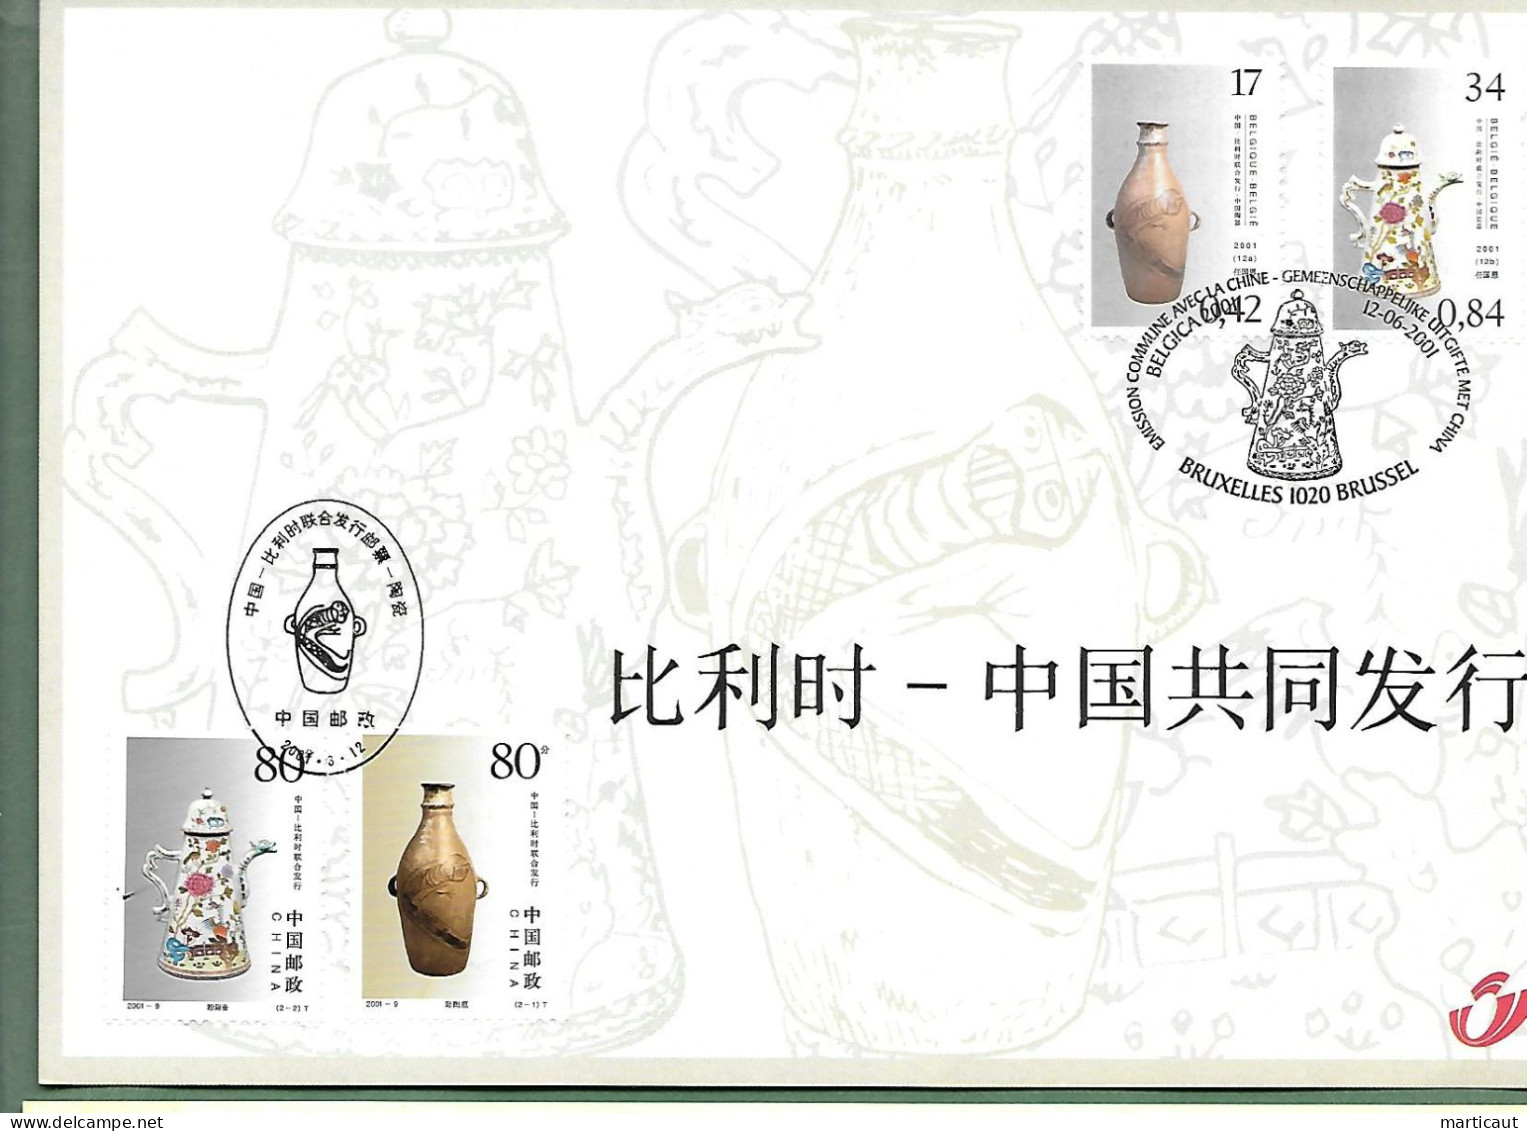 HK 3008 -- Belgique-Chine - Année 2001 - Erinnerungskarten – Gemeinschaftsausgaben [HK]